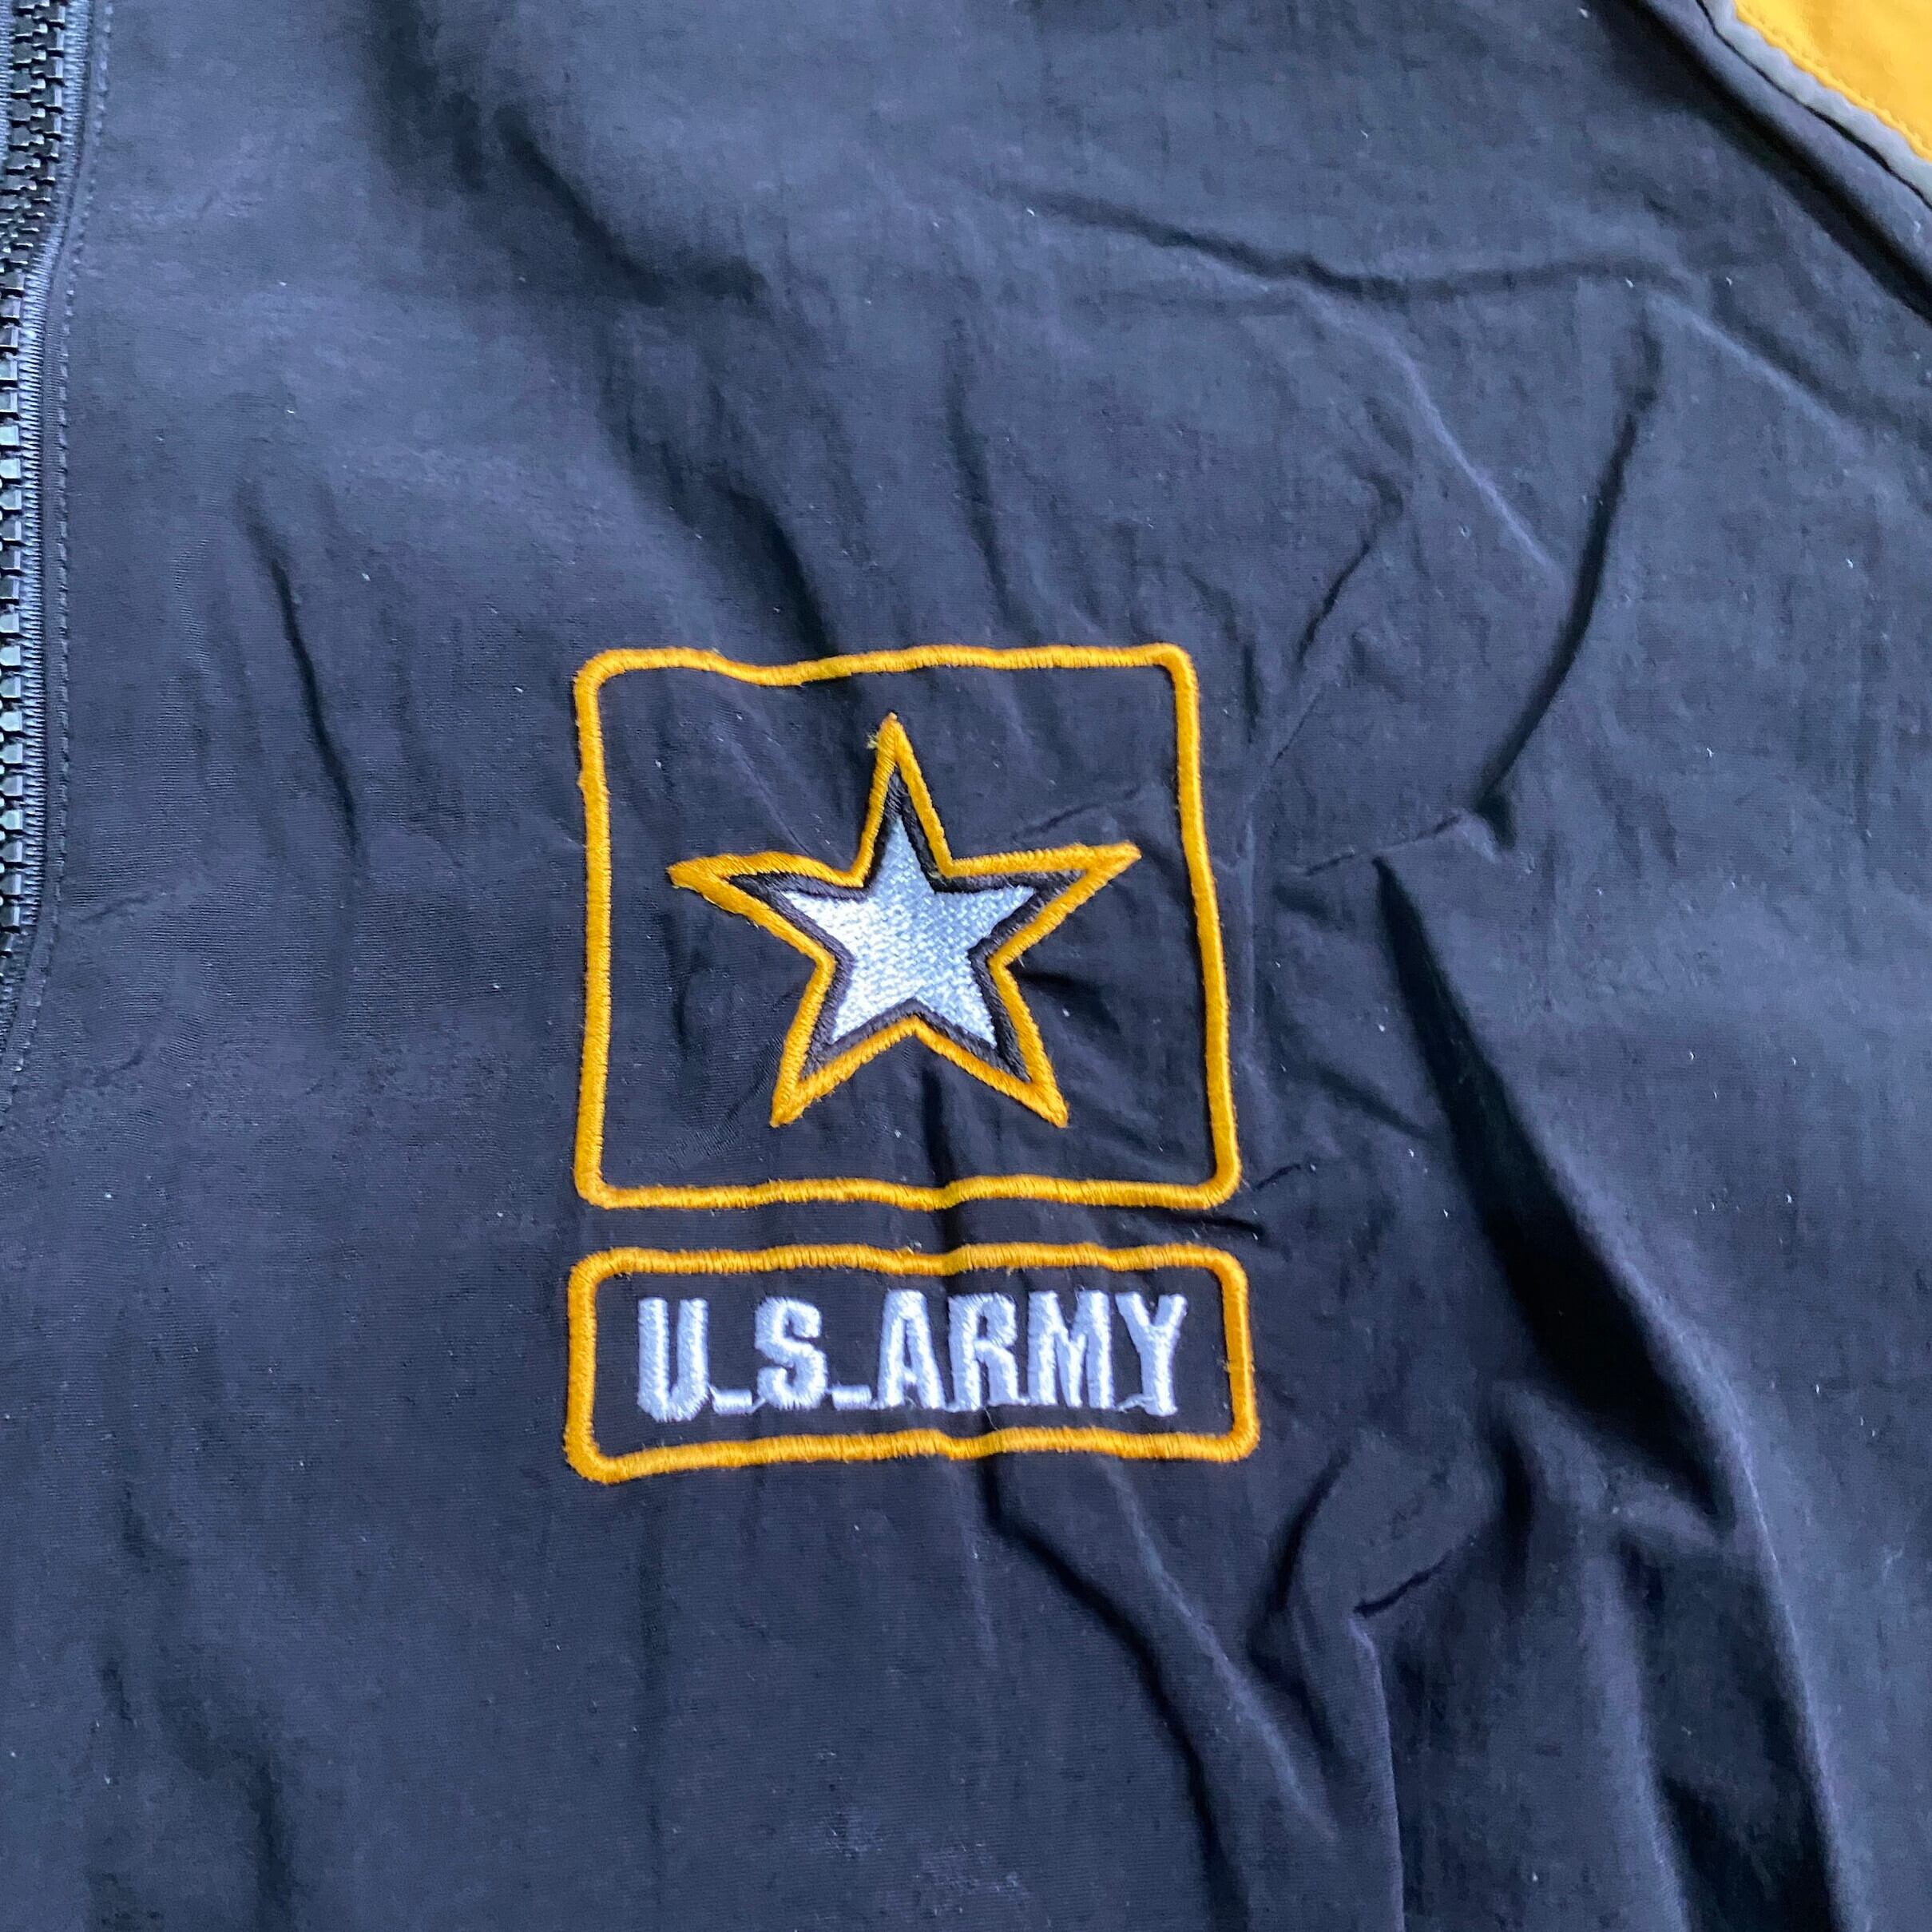 U.S.ARMY ナイロンジャケット 刺繍ロゴ ヴィンテージ ブラック Lサイズ